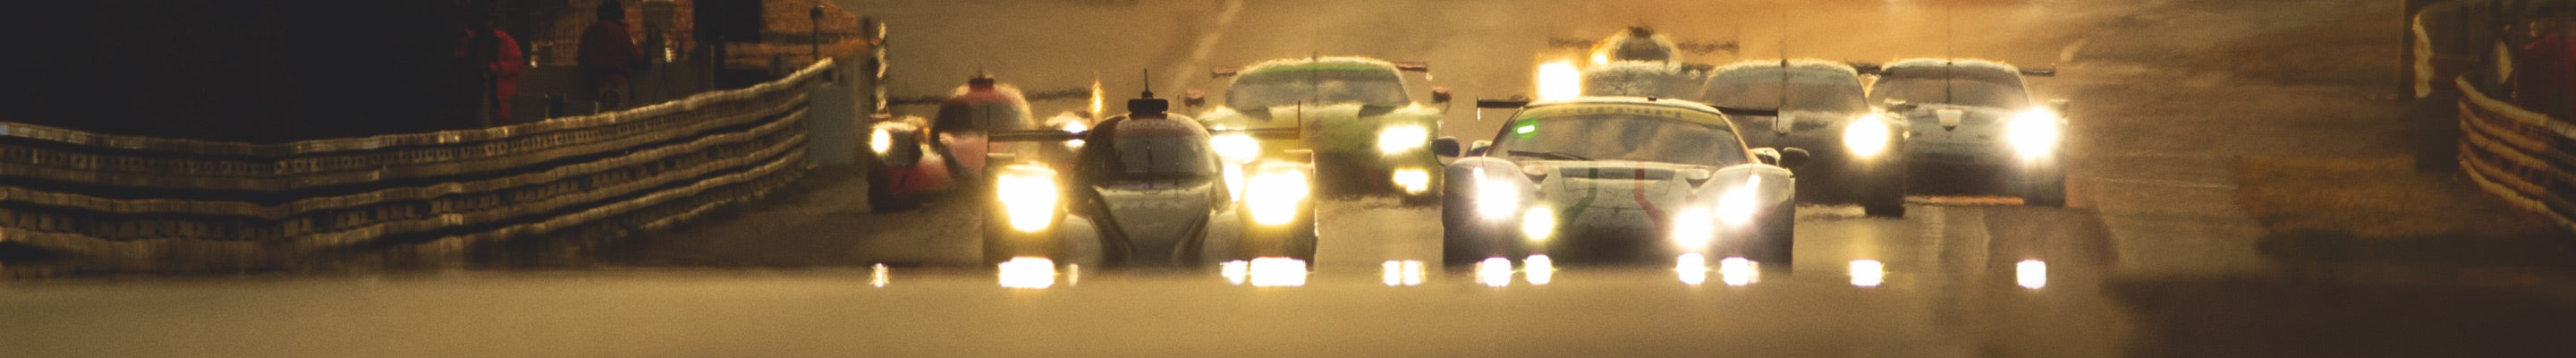 Racers Drive During Le Mans Endurance Race